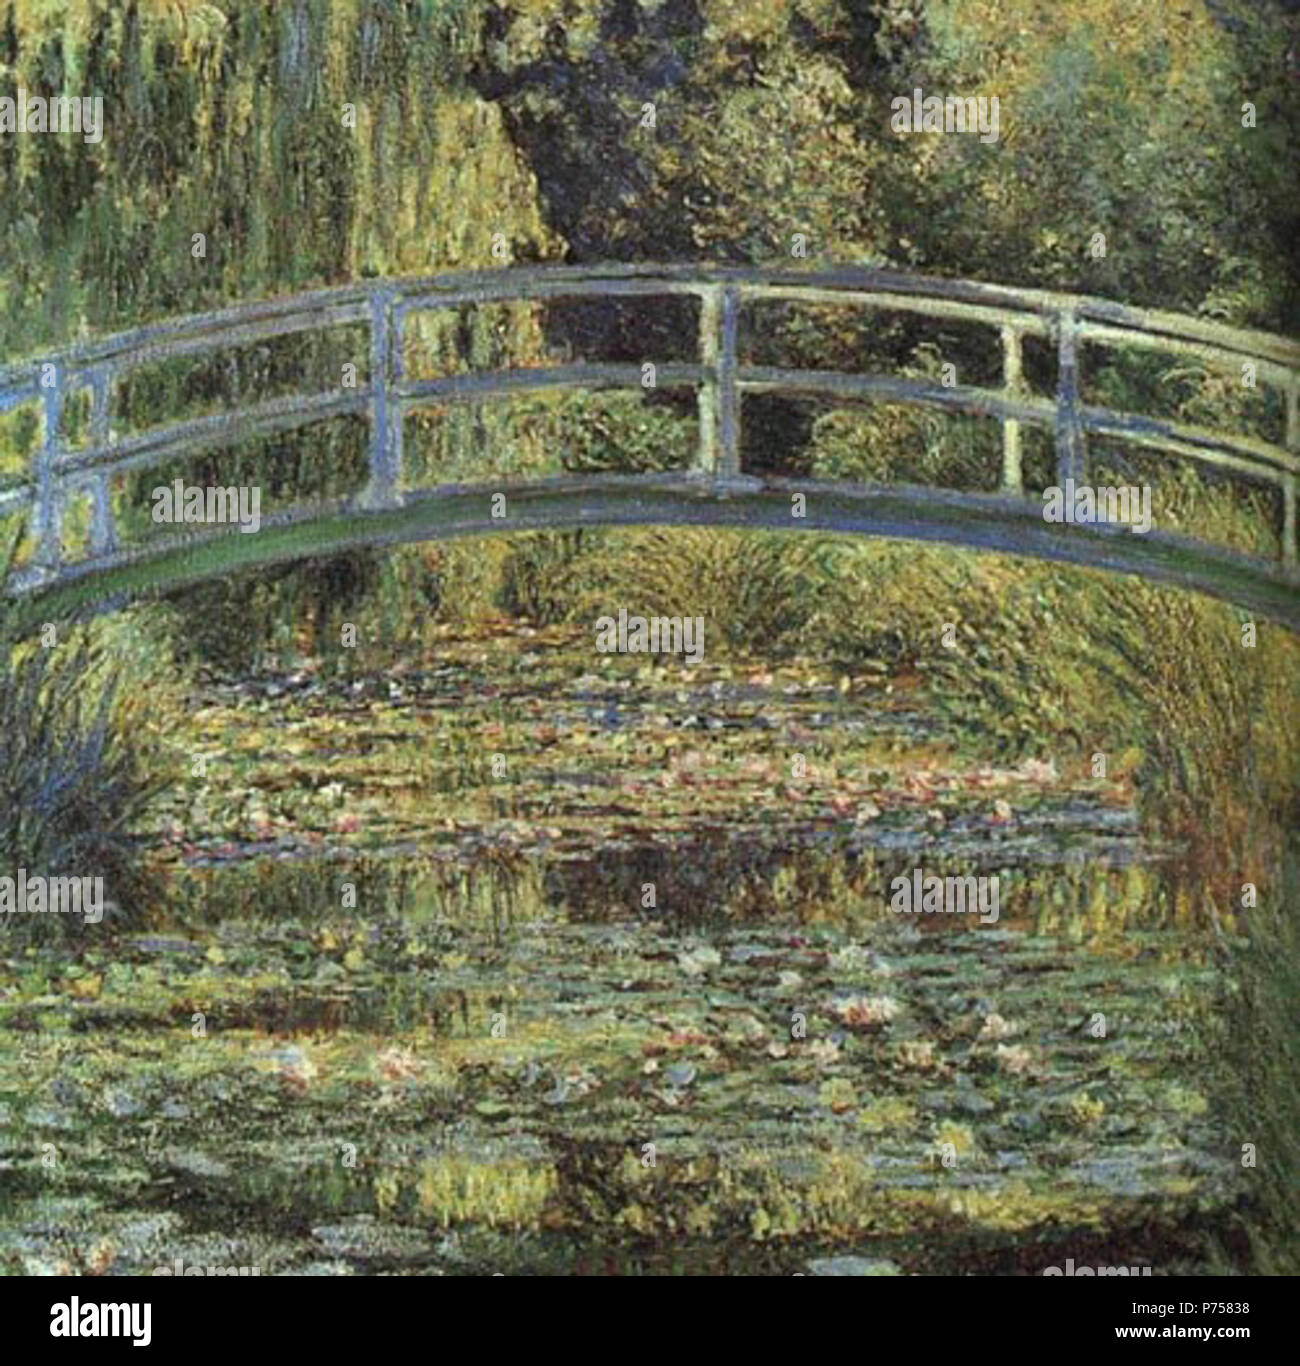 . Francese: Le Bassin aux nymphéas, harmonie verte La Ninfea Pond, verde armonia c. 1899 28 Claude Monet-Waterlilies Foto Stock